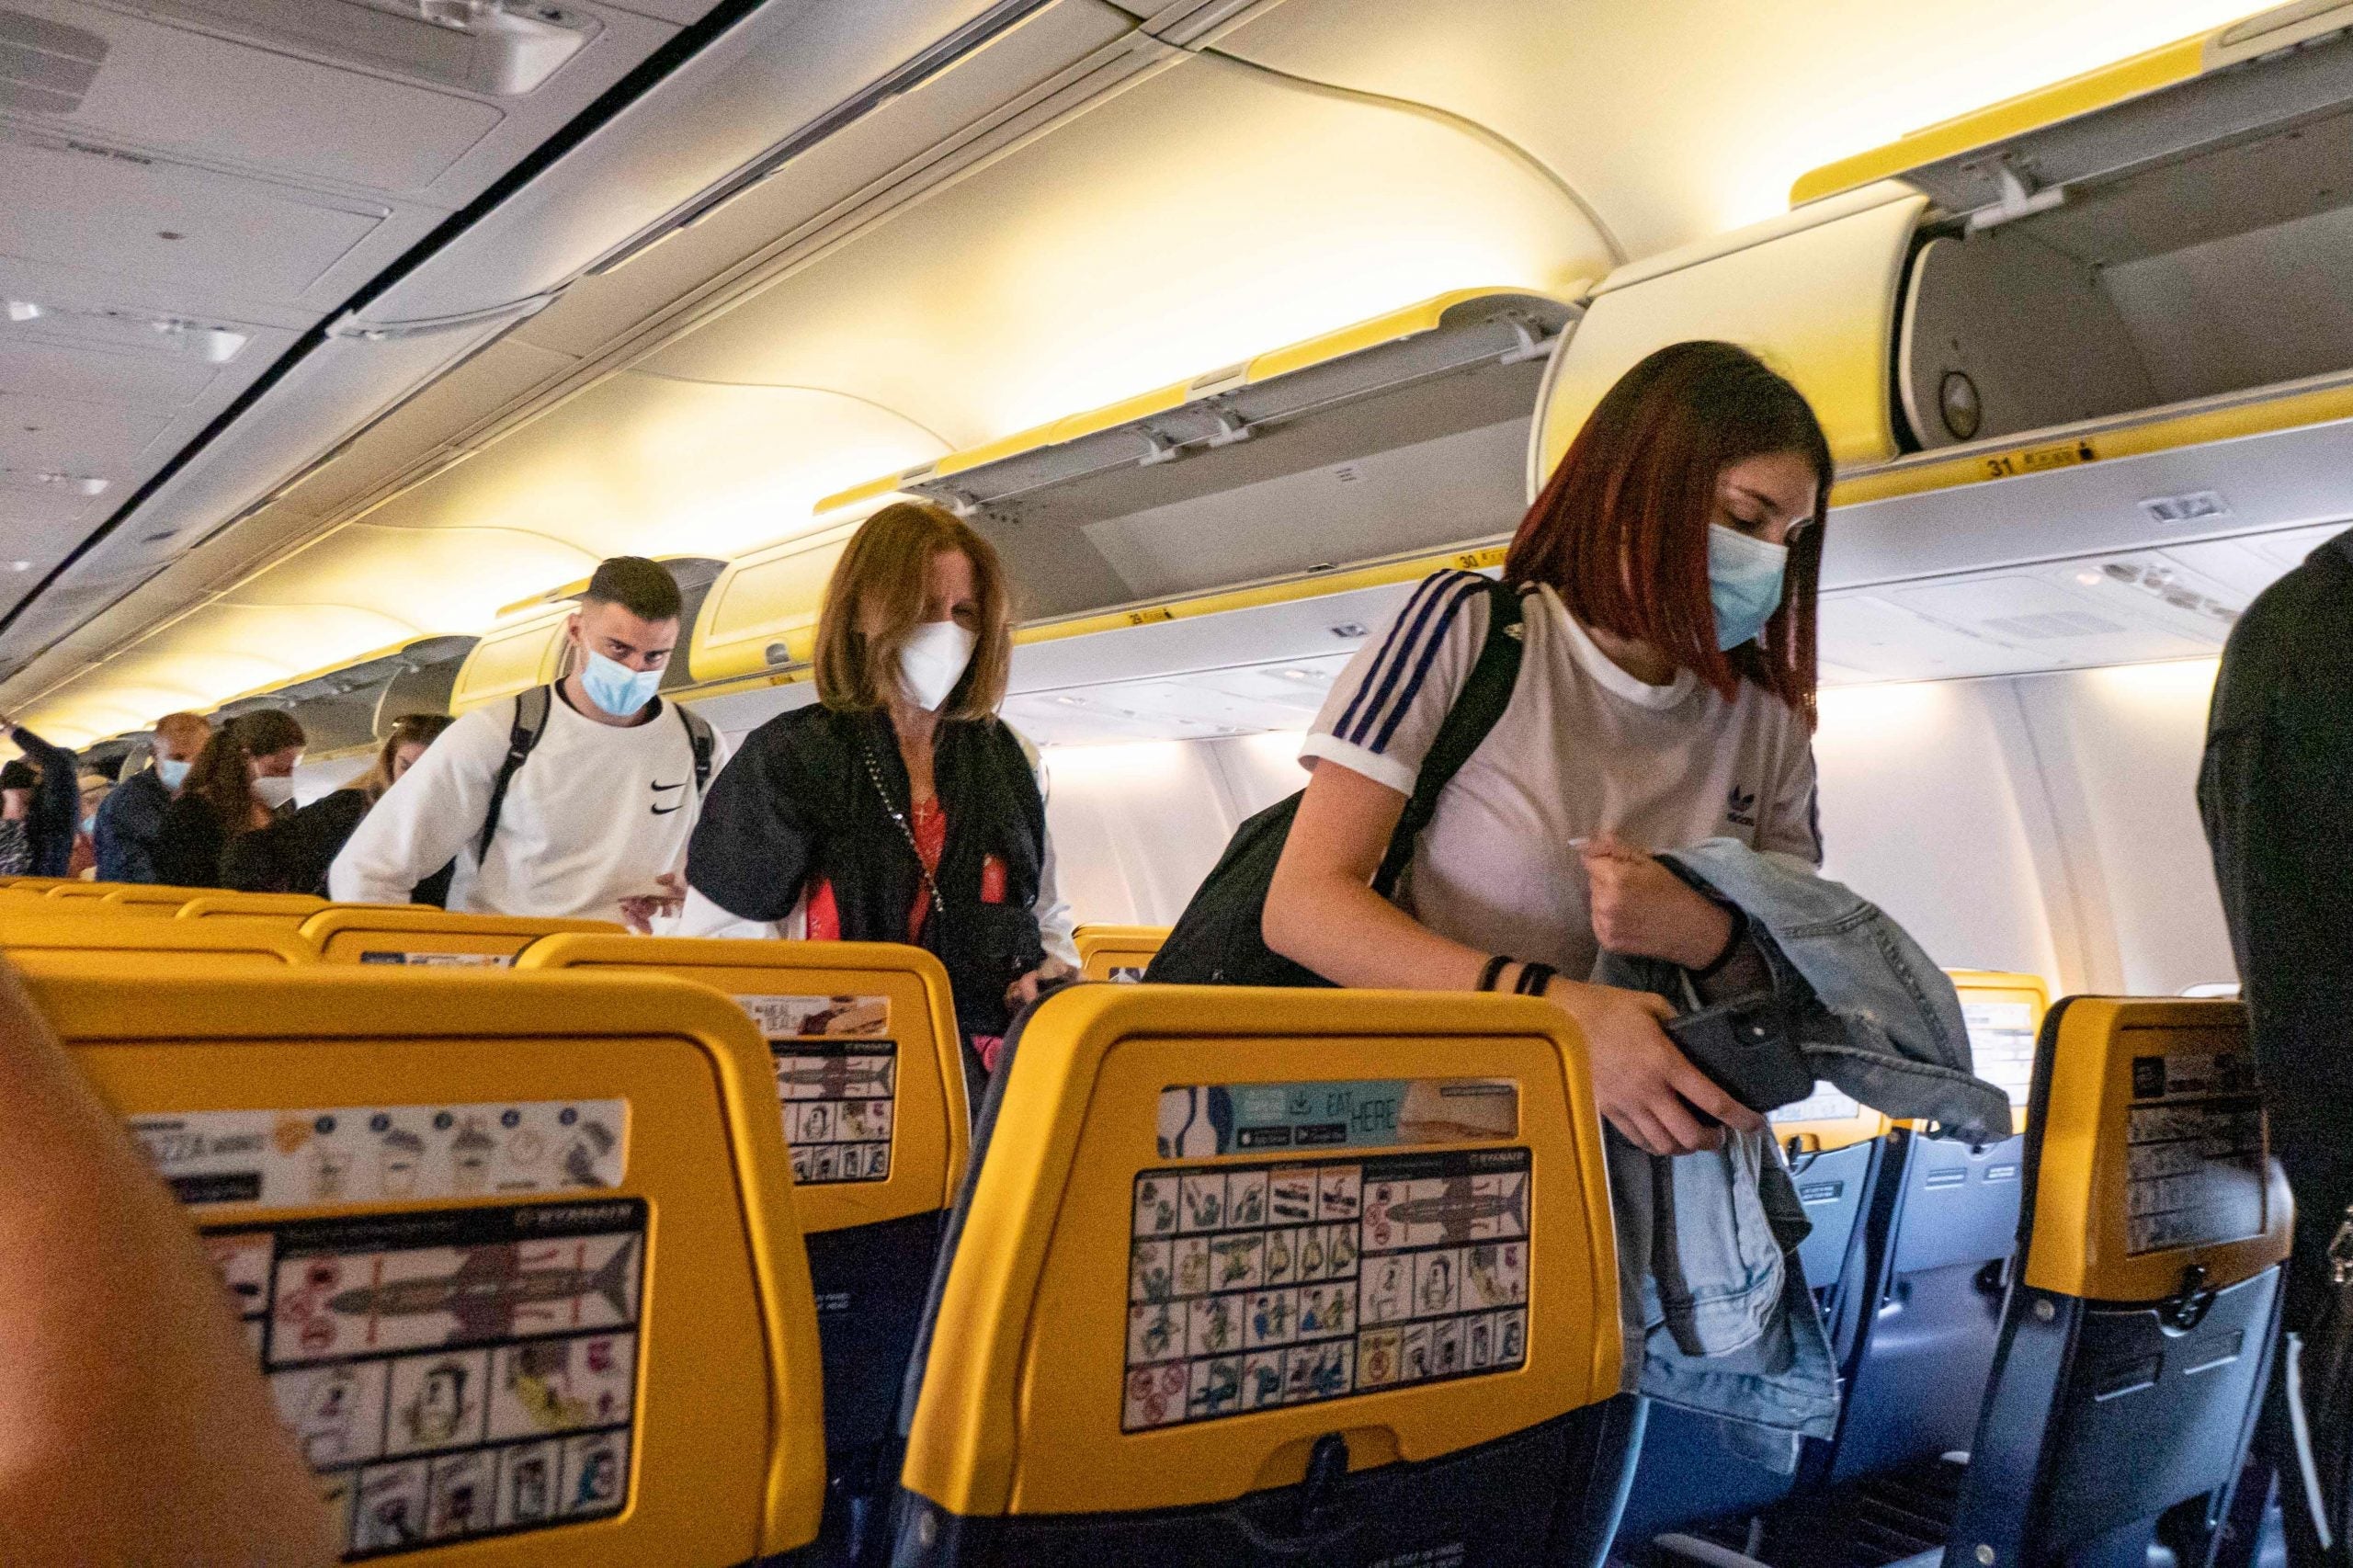 People leaving Ryanair flight wearing masks